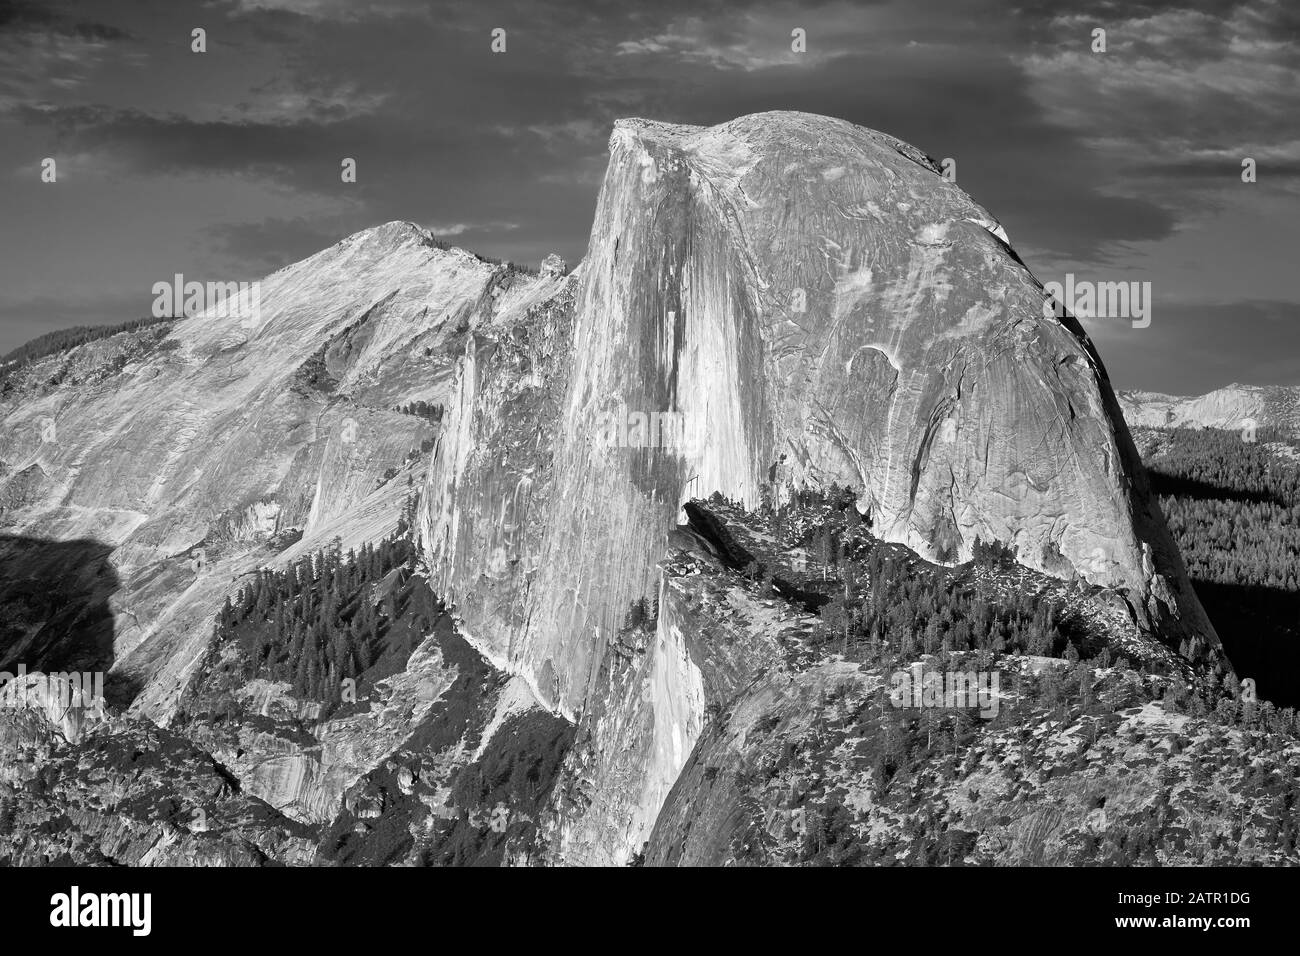 Schwarz-Weiß-Bild von Half Dome, berühmter Kuppel aus Granit im Yosemite Valley, Kalifornien, USA. Stockfoto